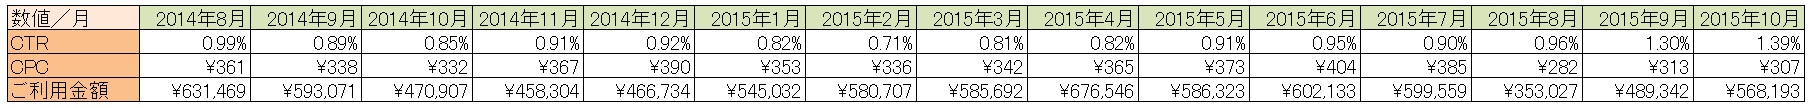 20151120_デバイス・月別データ_表